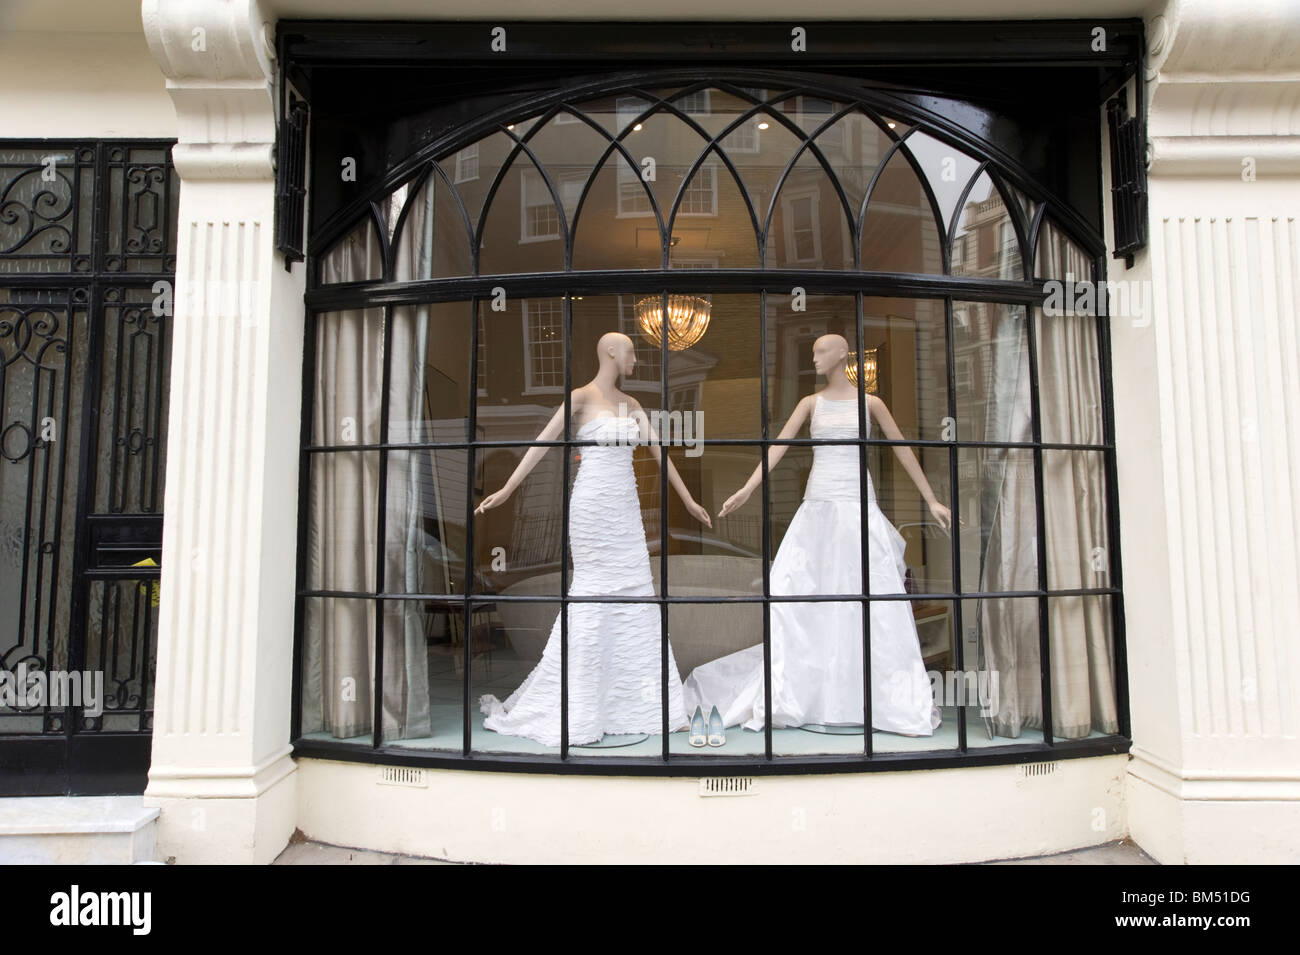 Robes de vitrine, London, UK Banque D'Images